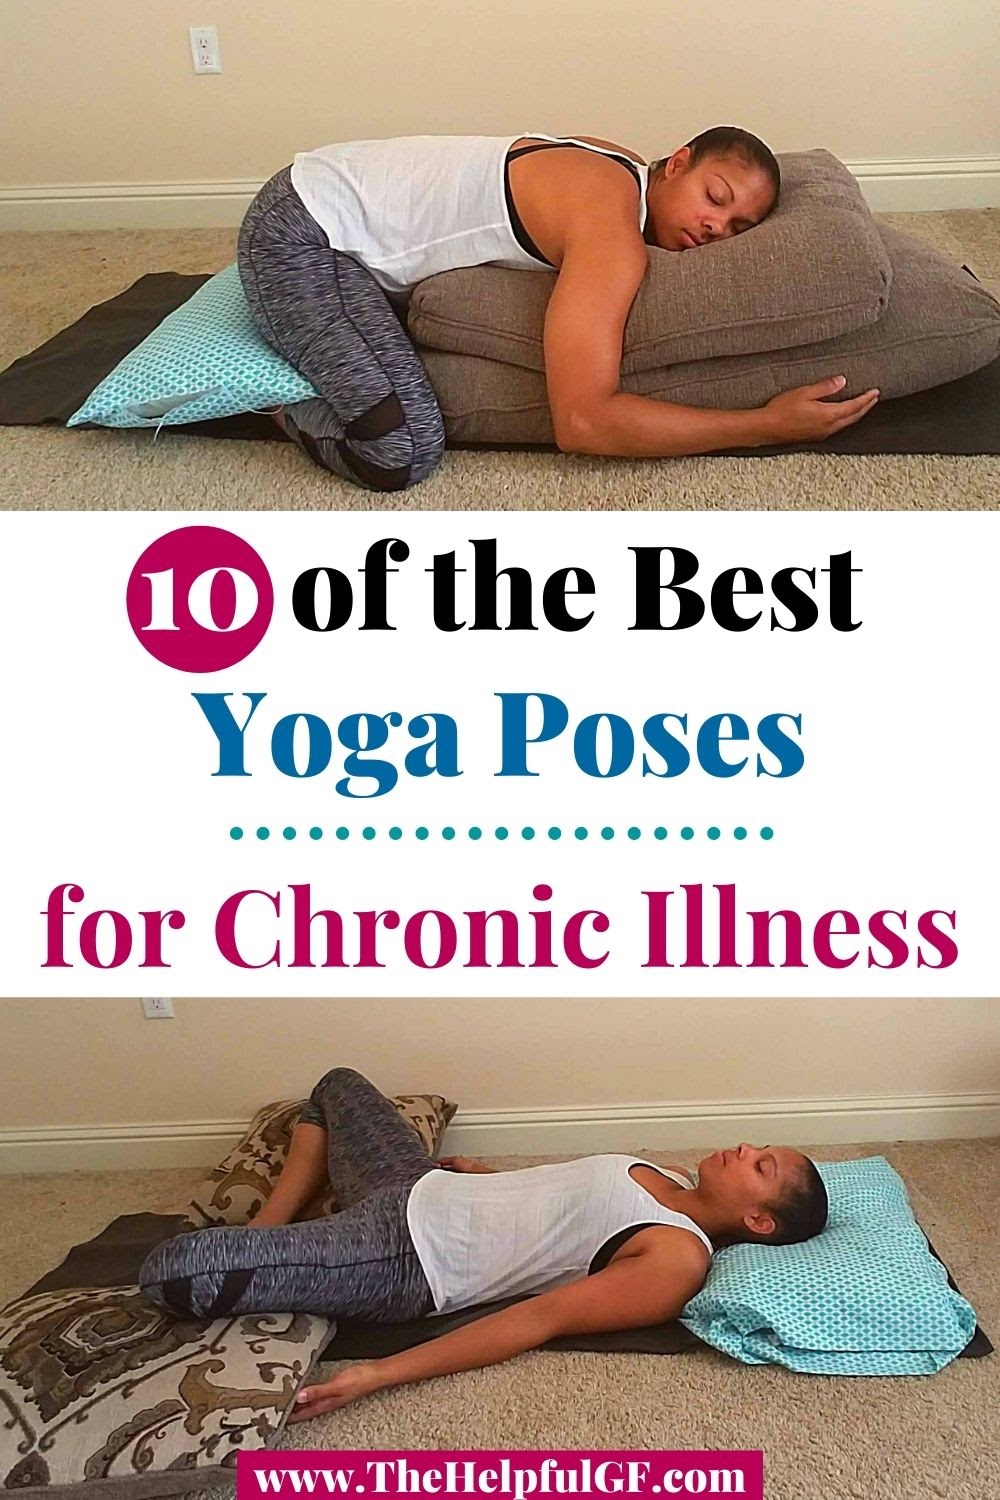 yoga poses for chronic illness pin